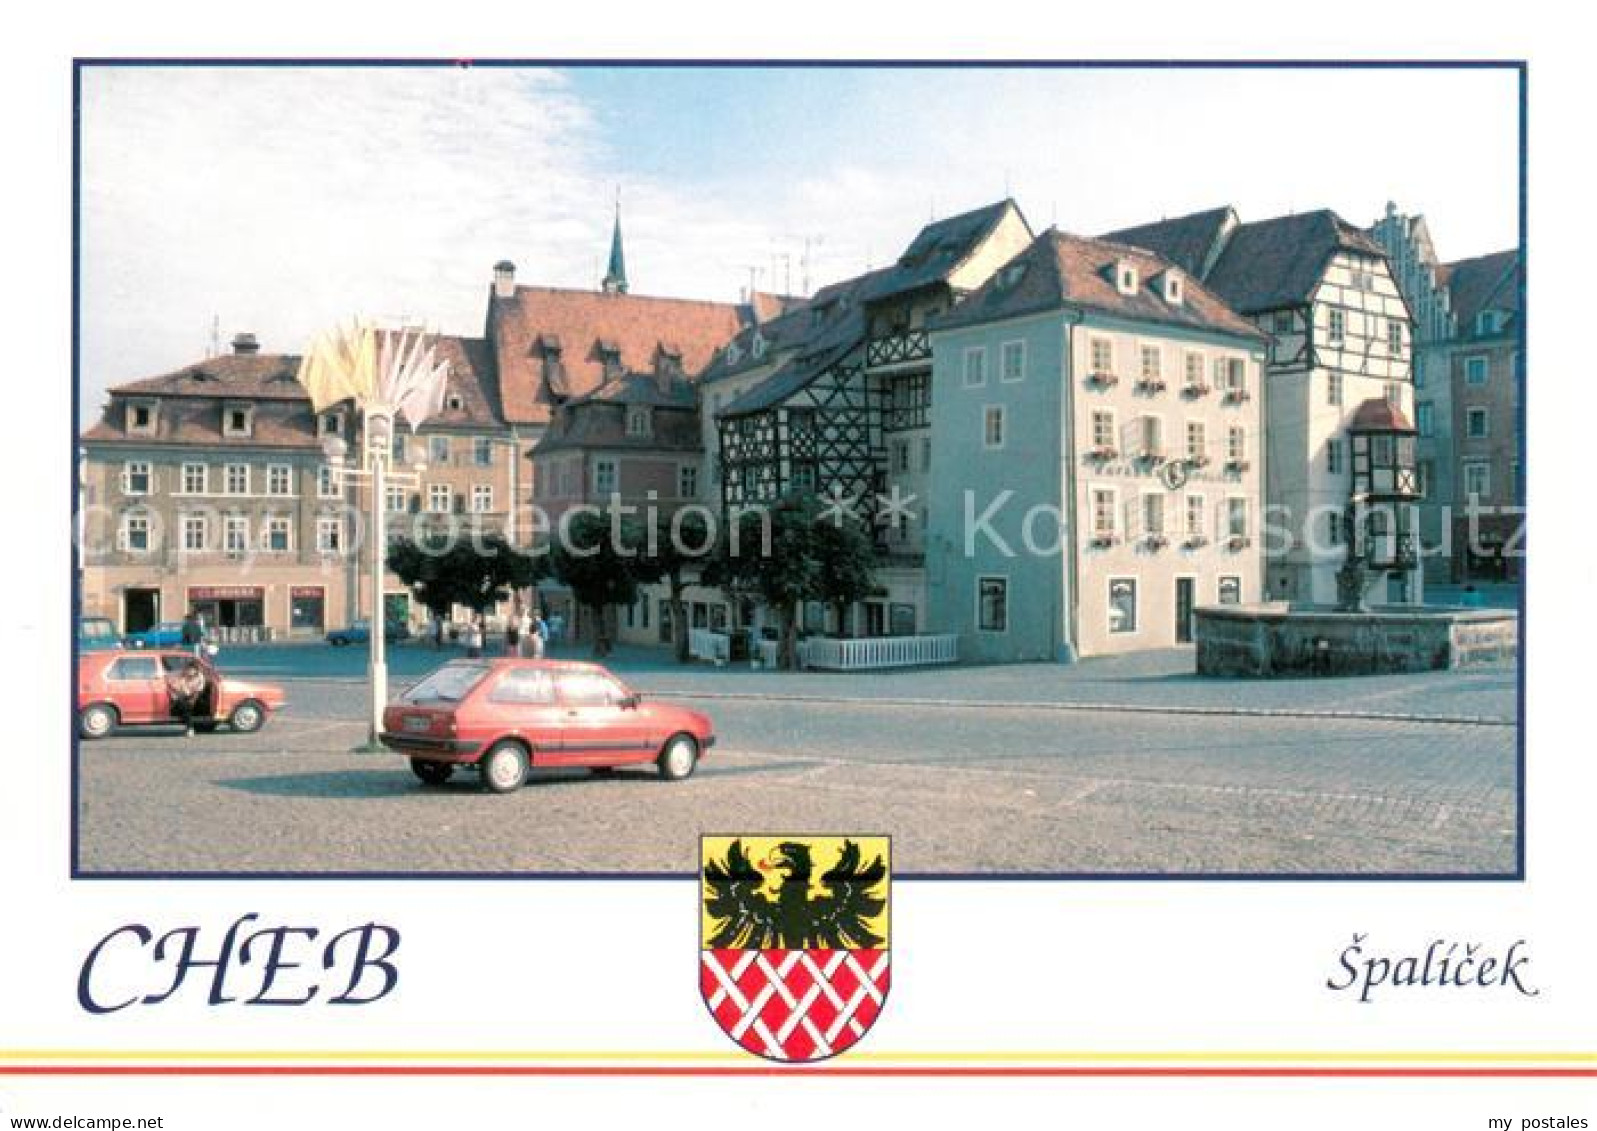 73600354 Cheb Eger Spalicek  - Czech Republic